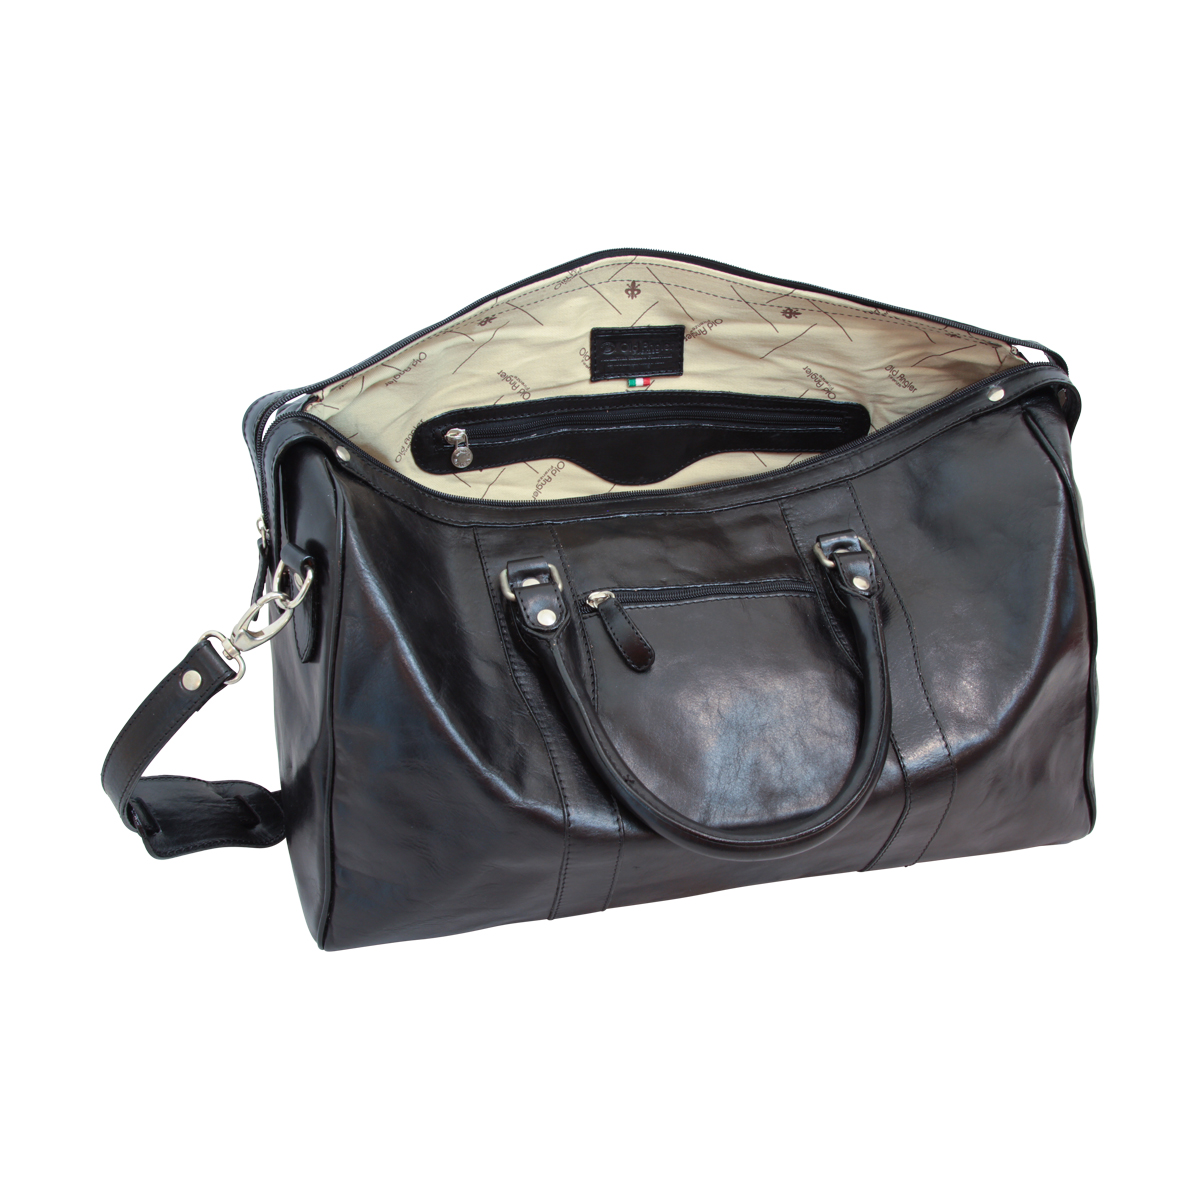 Travel Bag with shoulder strap | 108889NE UK | Old Angler Firenze